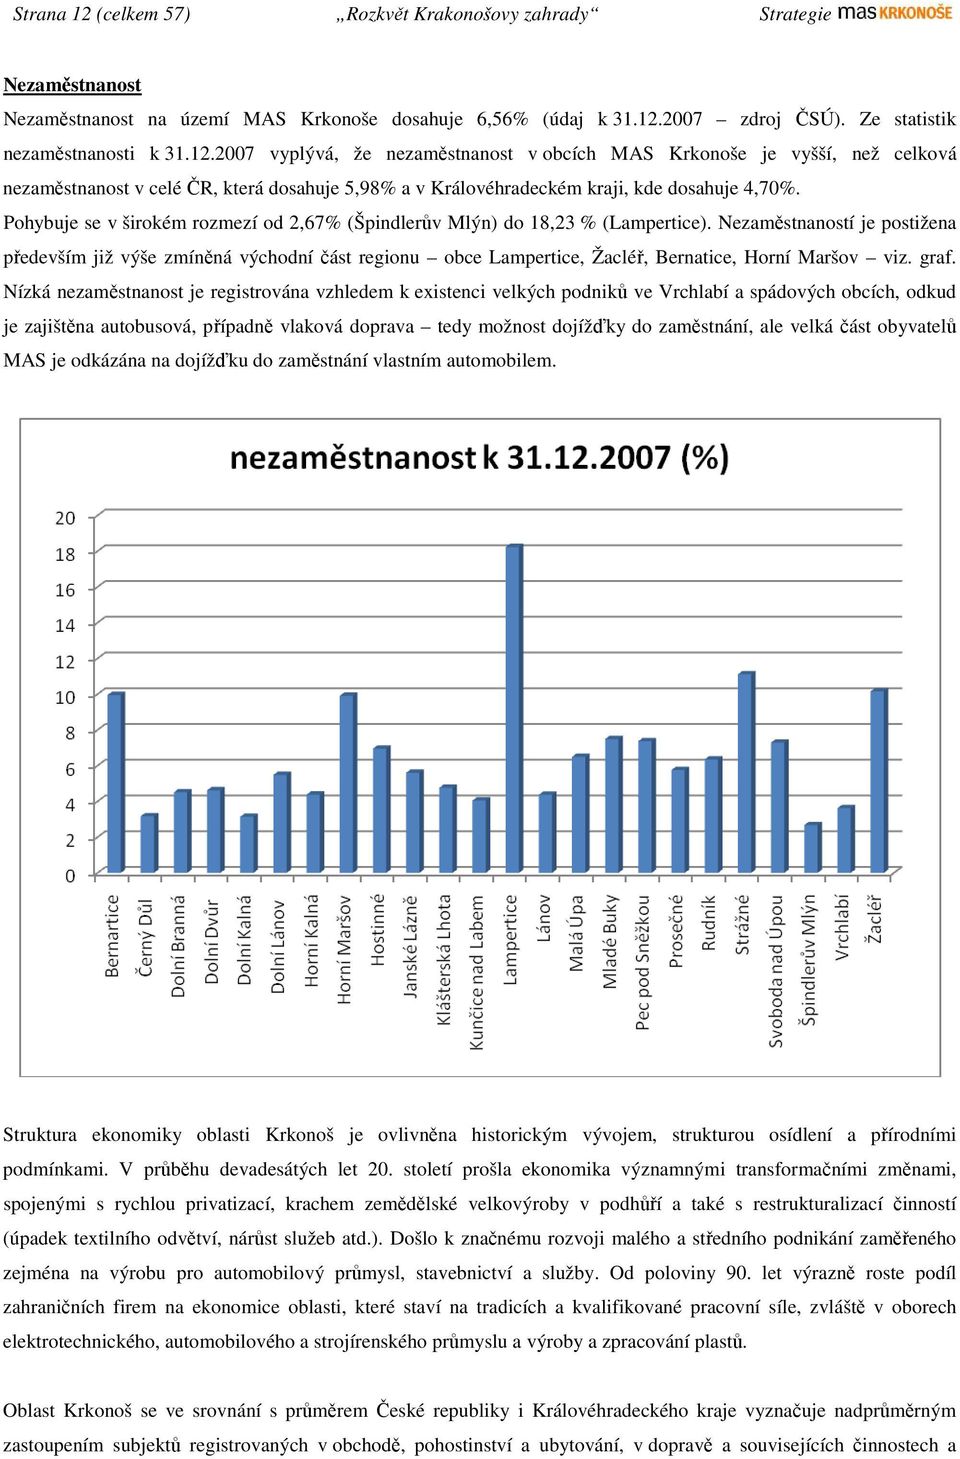 Nezaměstnaností je postižena především již výše zmíněná východní část regionu obce Lampertice, Žacléř, Bernatice, Horní Maršov viz. graf.